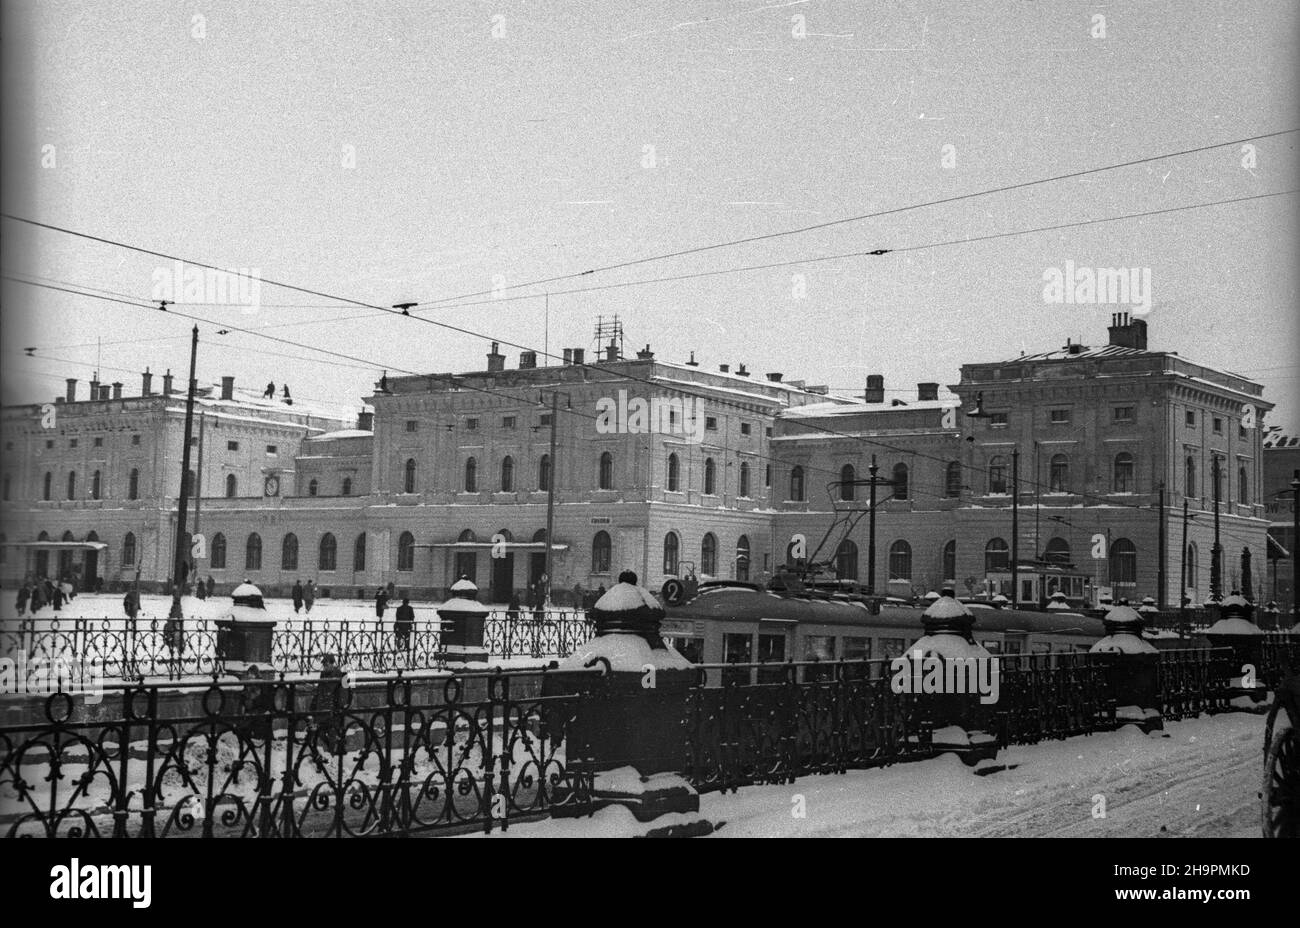 Kraków, 1949-03. Dworzec Kraków G³ówny. ka PAP Dok³adny dzieñ wydarzenia nieustalony. Krakau, März 1949. Der Krakauer Hauptbahnhof. ka PAP Stockfoto